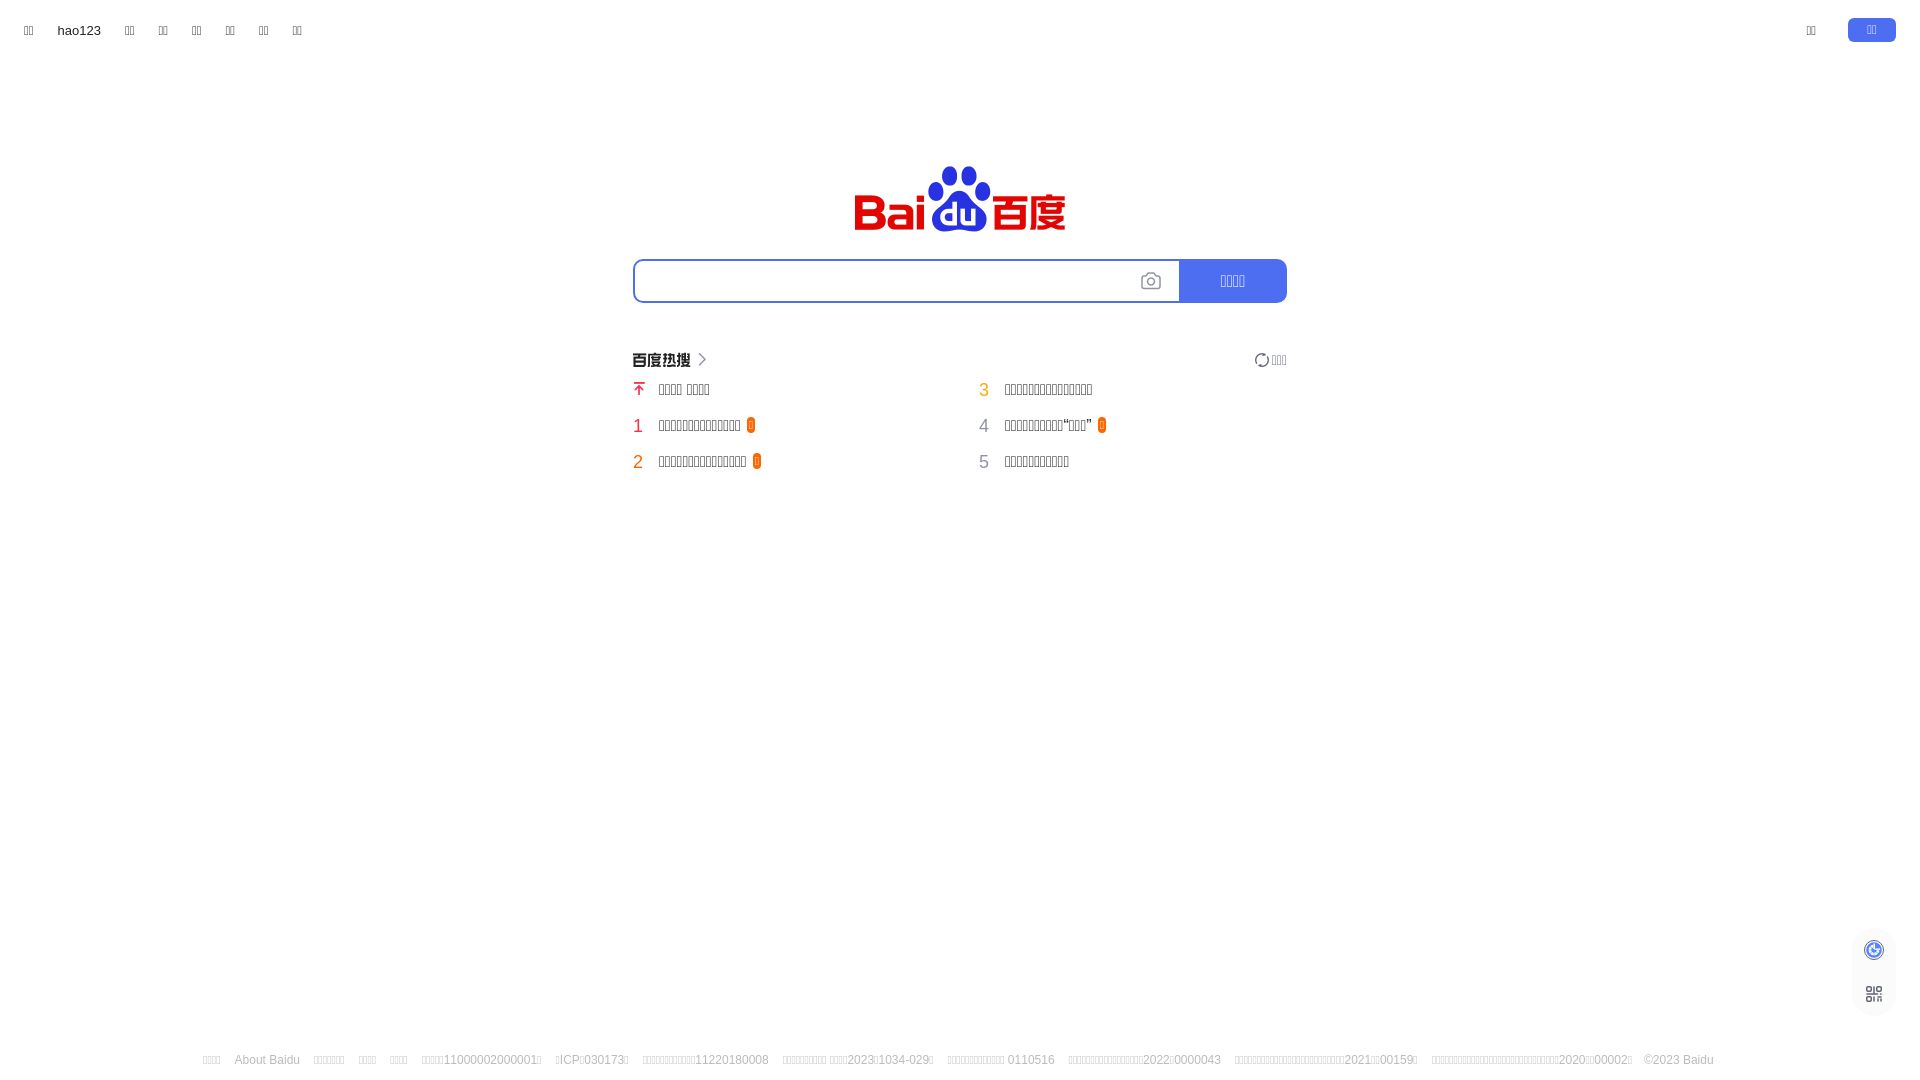 Stato del sito web baidu.com è   ONLINE